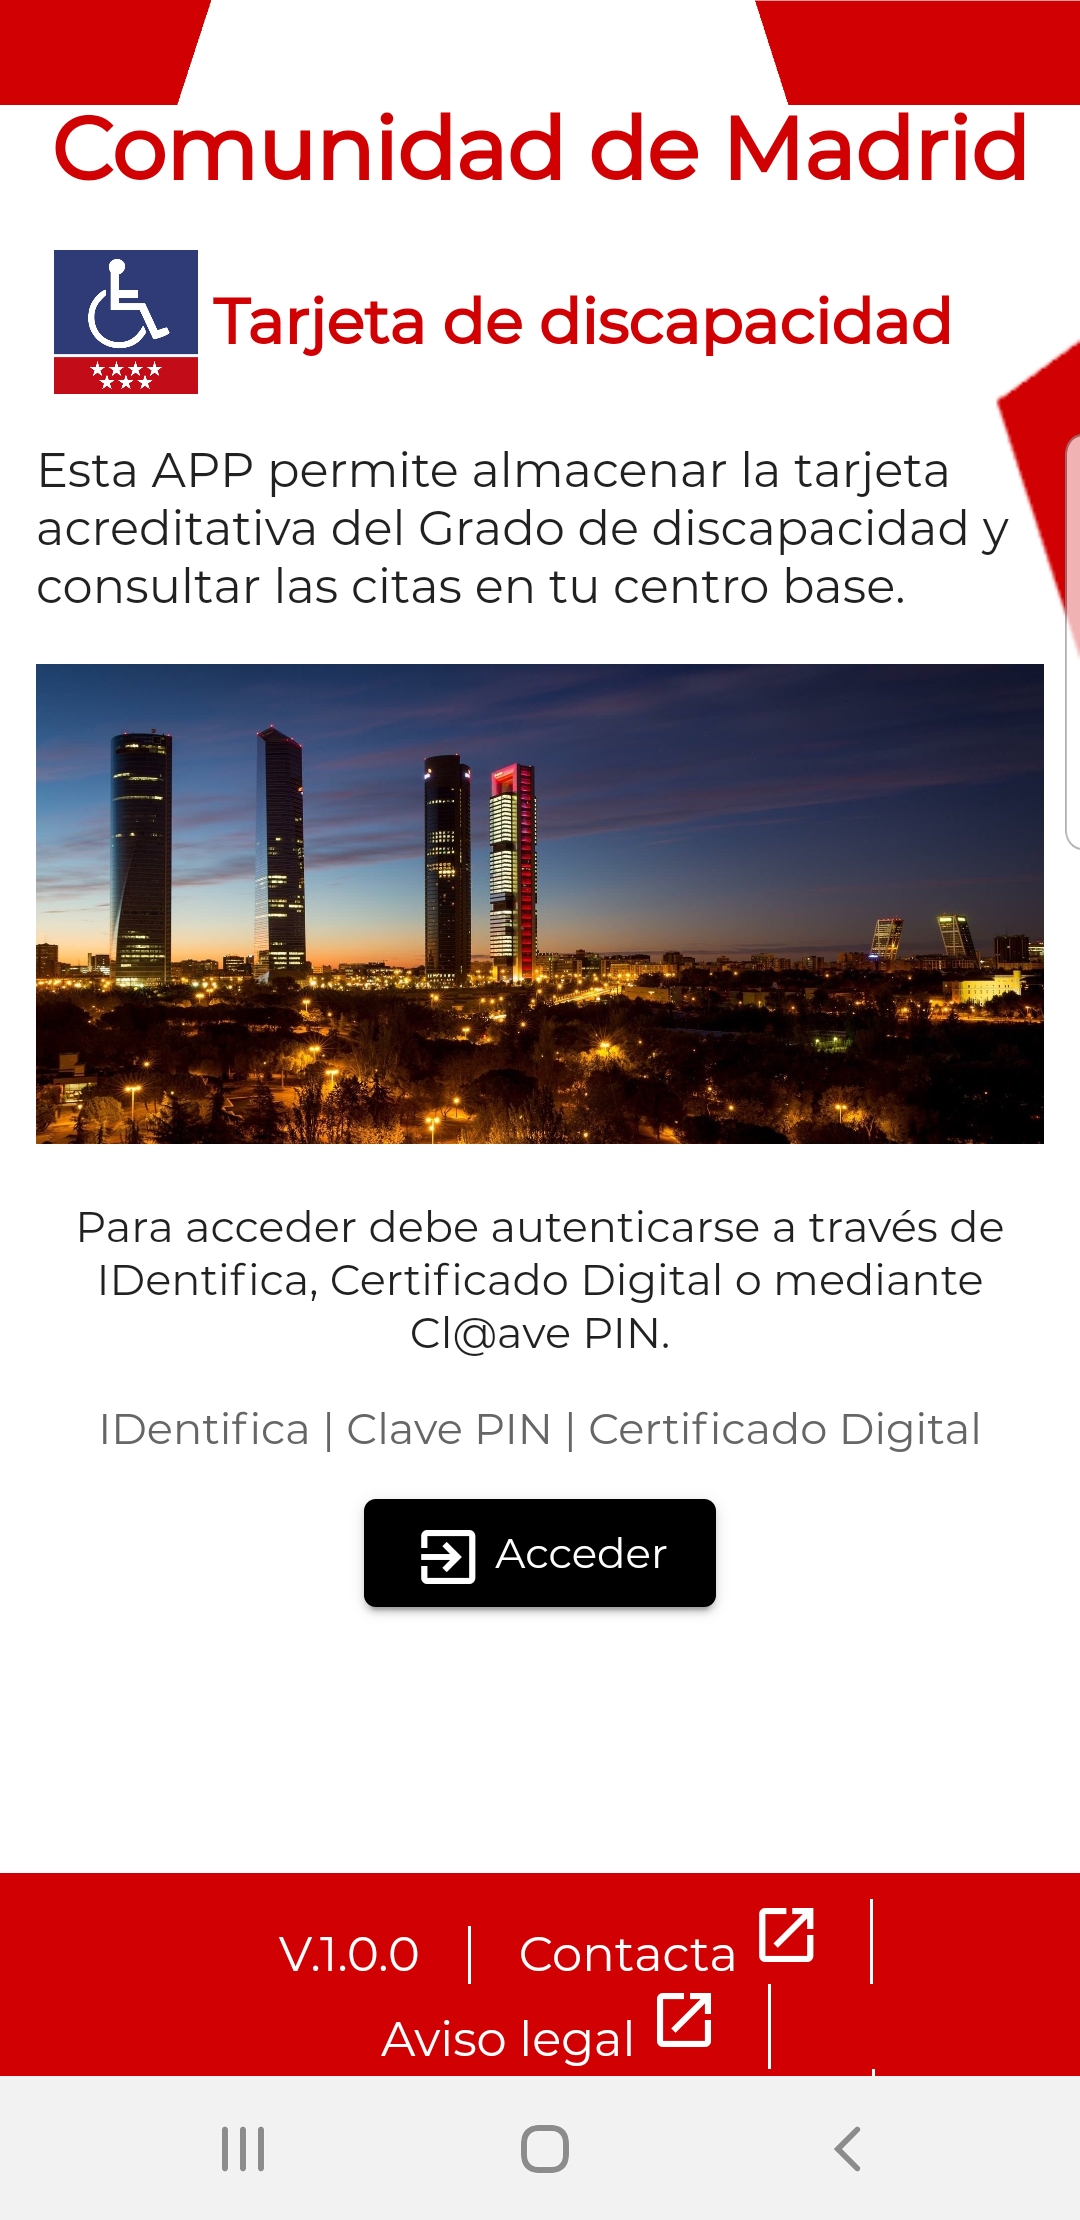 Pantalla de inicio (login) de la App Tarjeta de Discapacidad de la Comunidad de Madrid